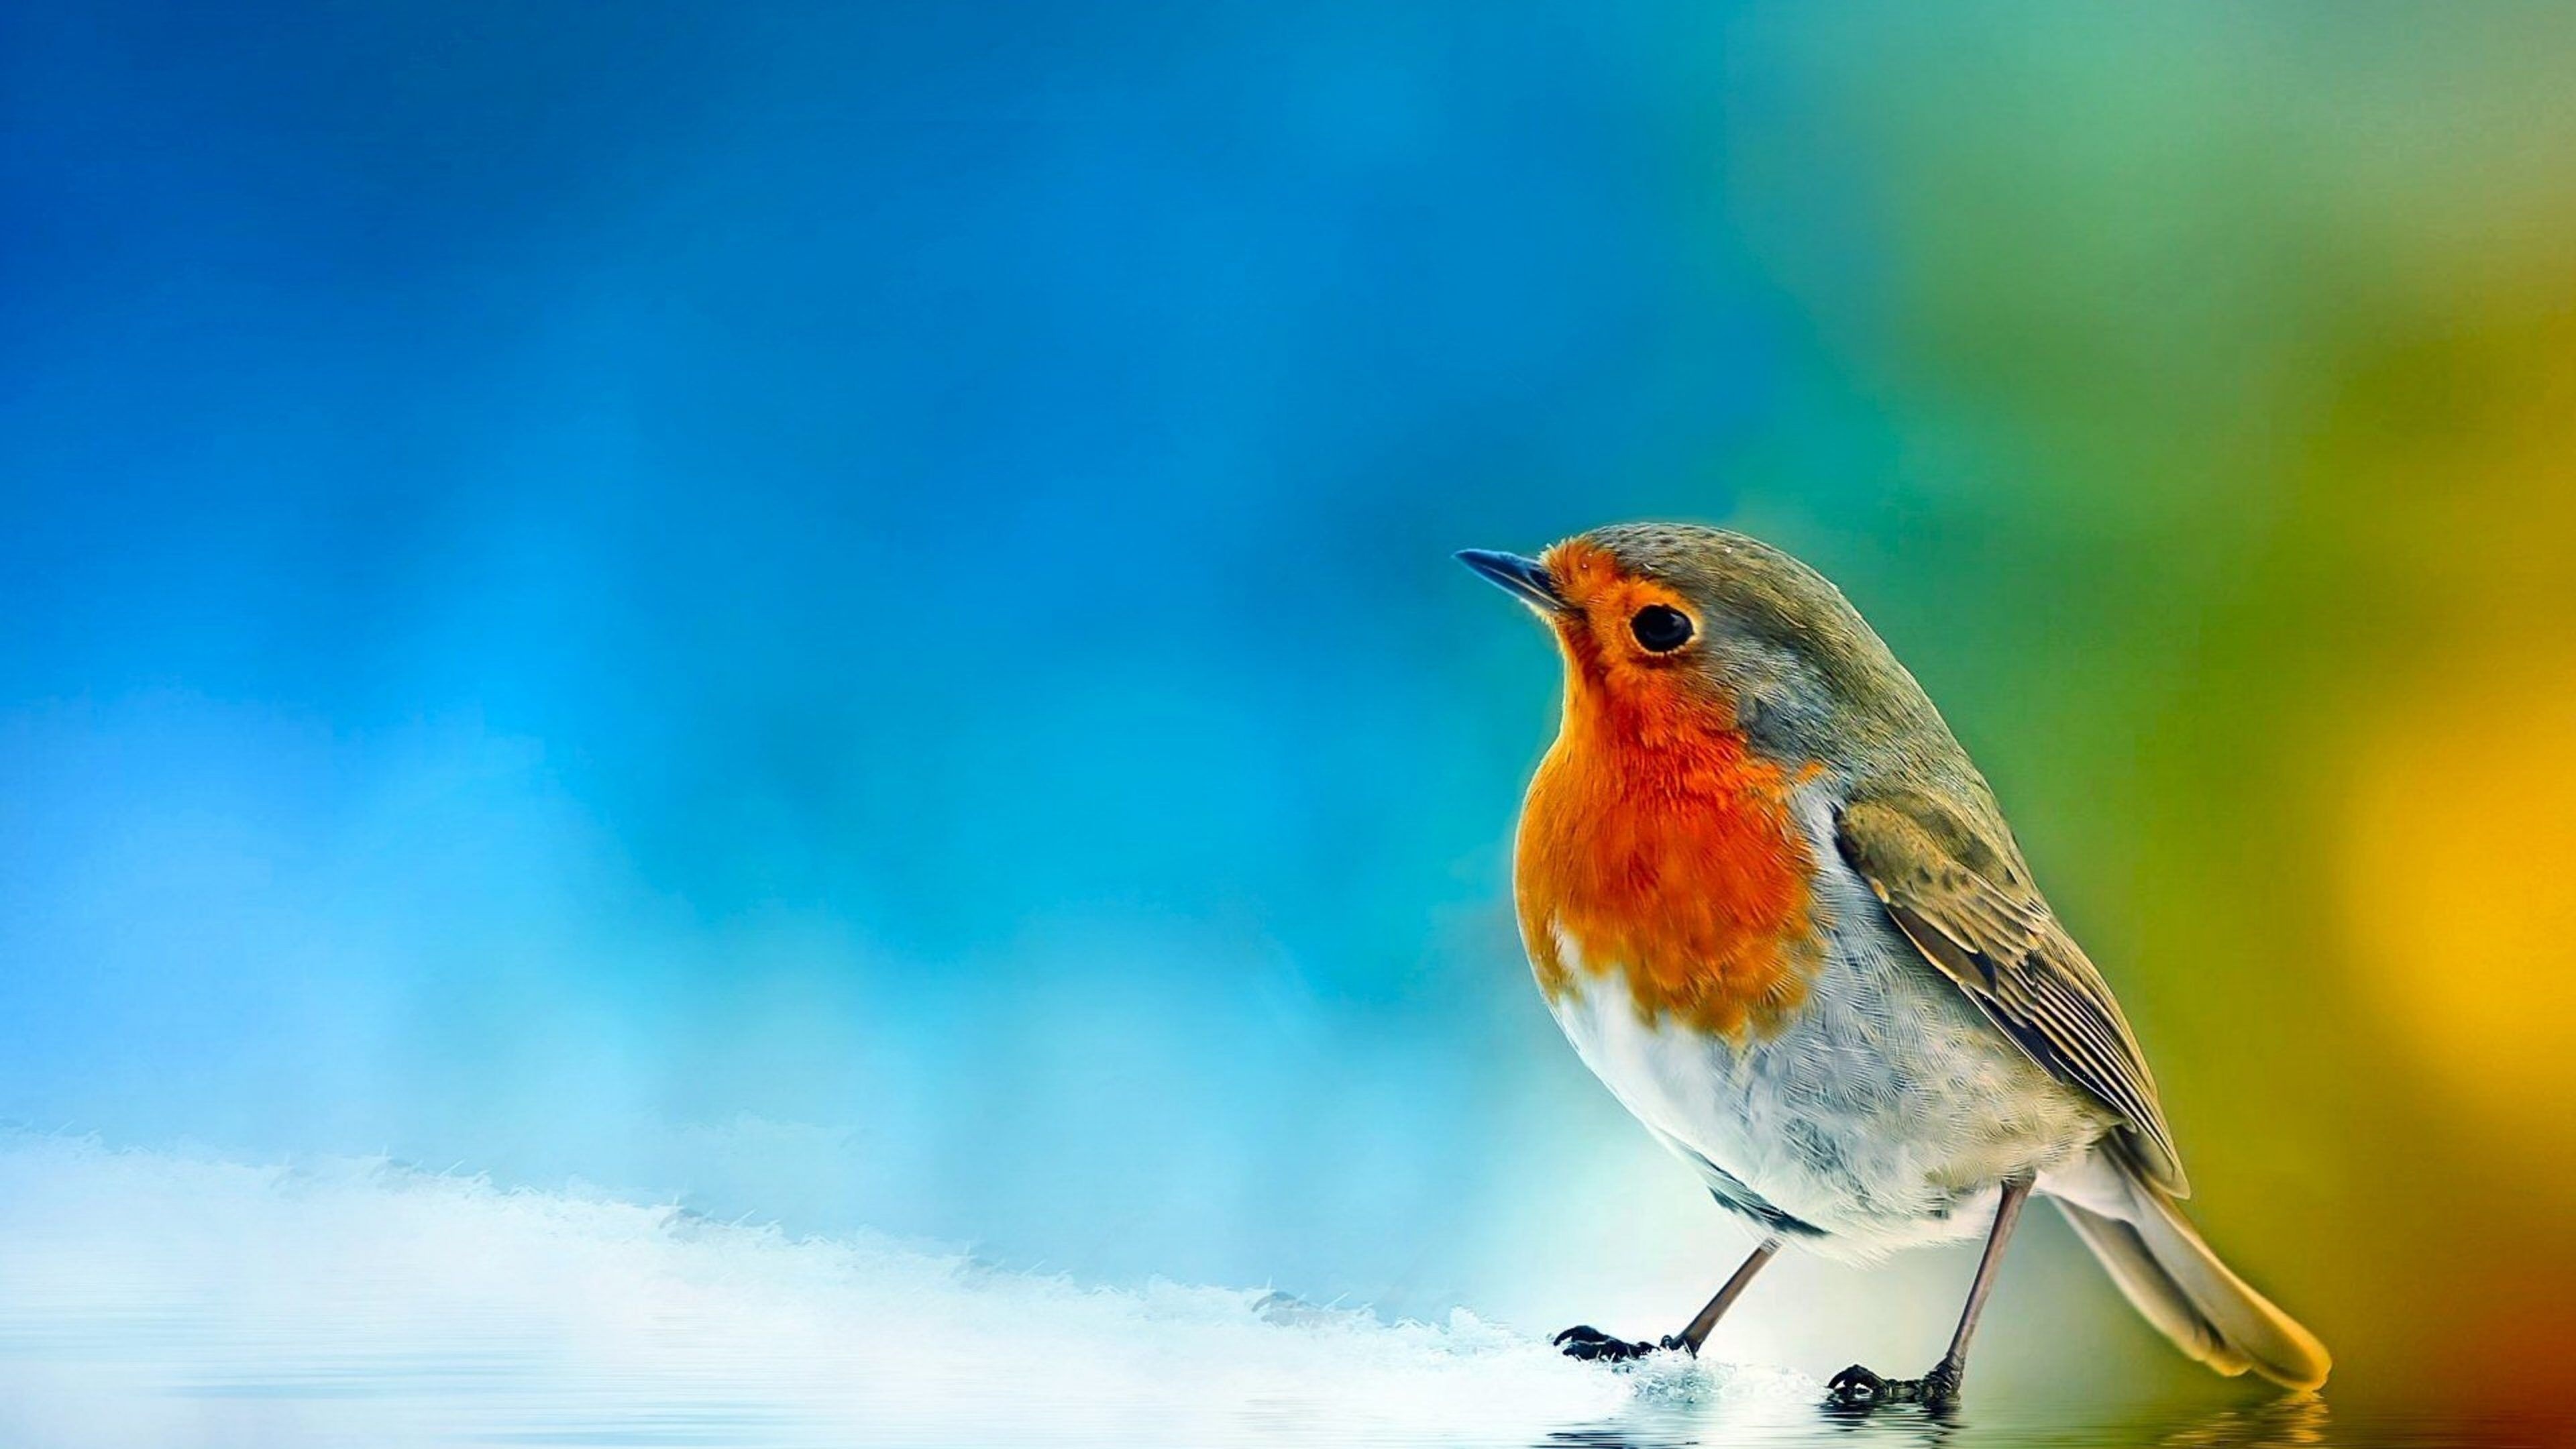 Robin bird, Adorable winter birds, Widescreen HD wallpaper, Sarah Peltier, 3840x2160 4K Desktop